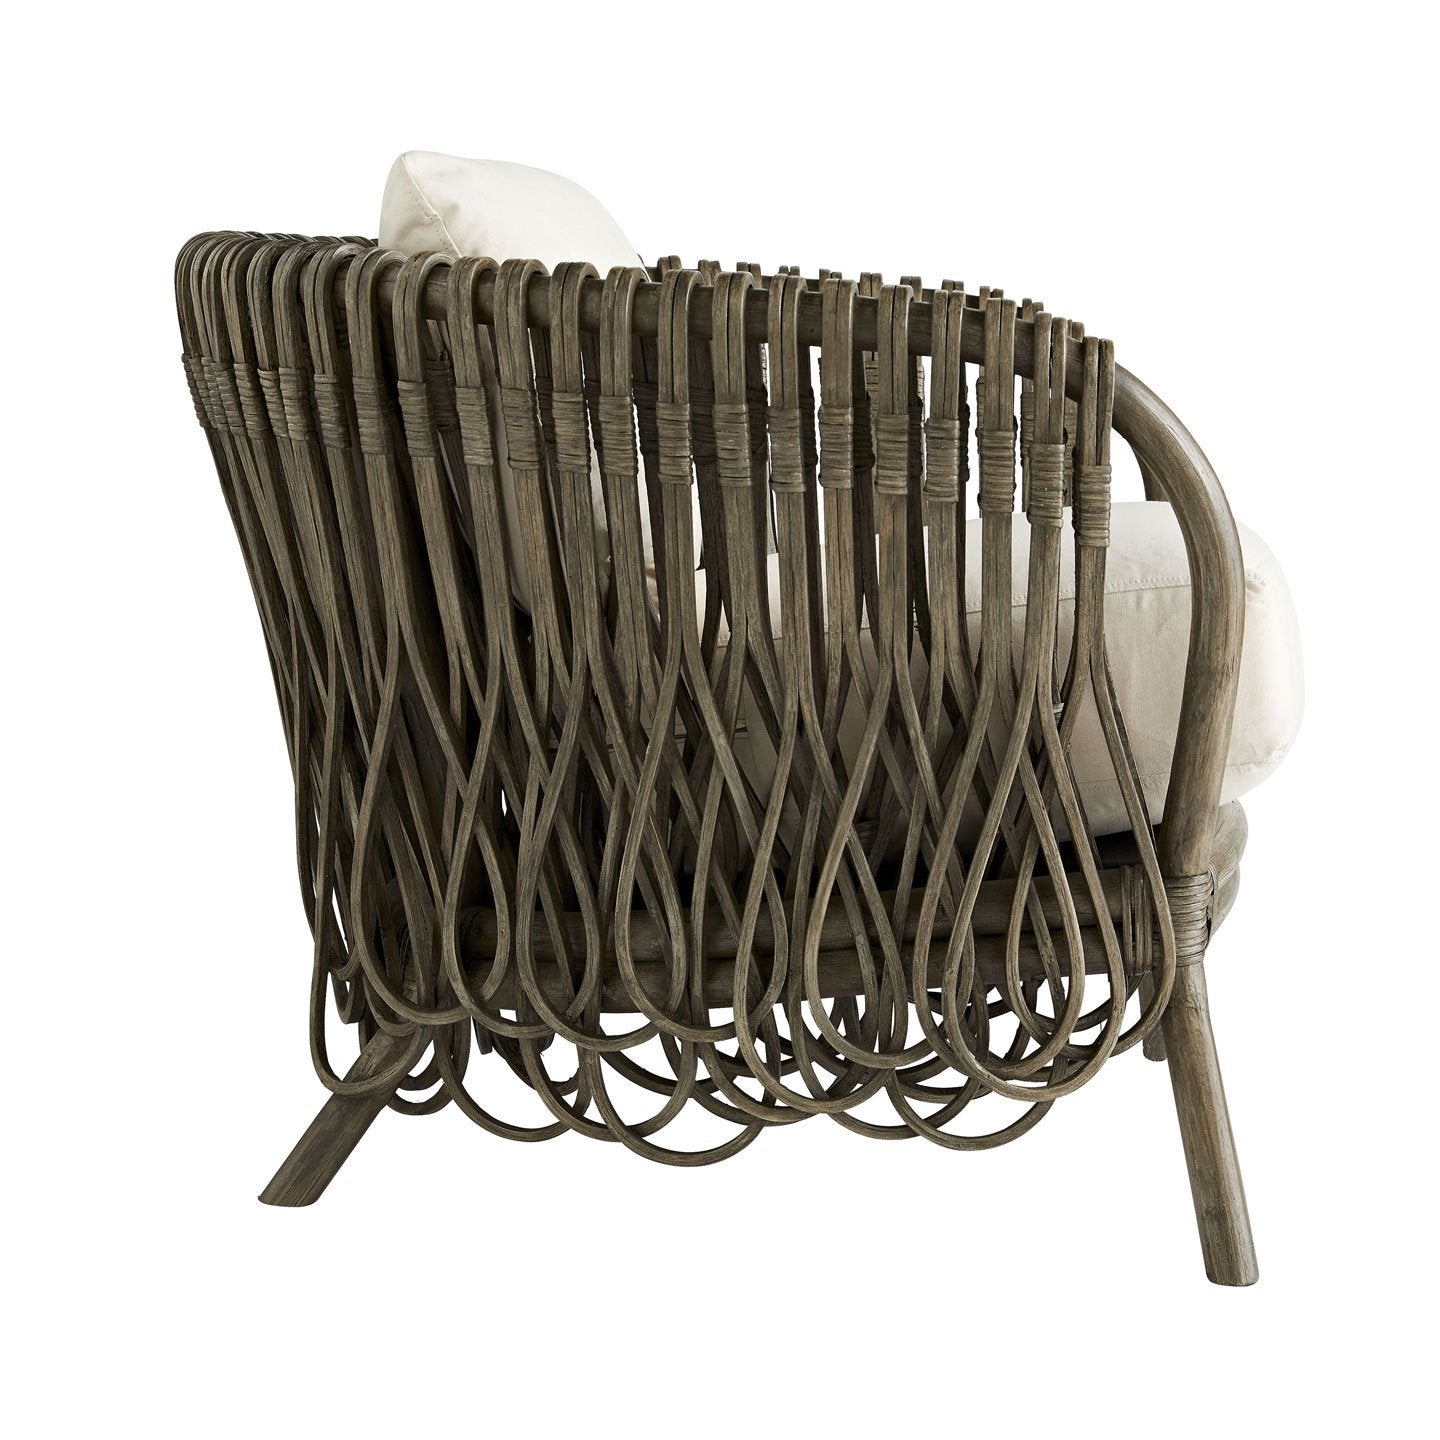 Strata Lounge Chair - Gray Wash/Muslin